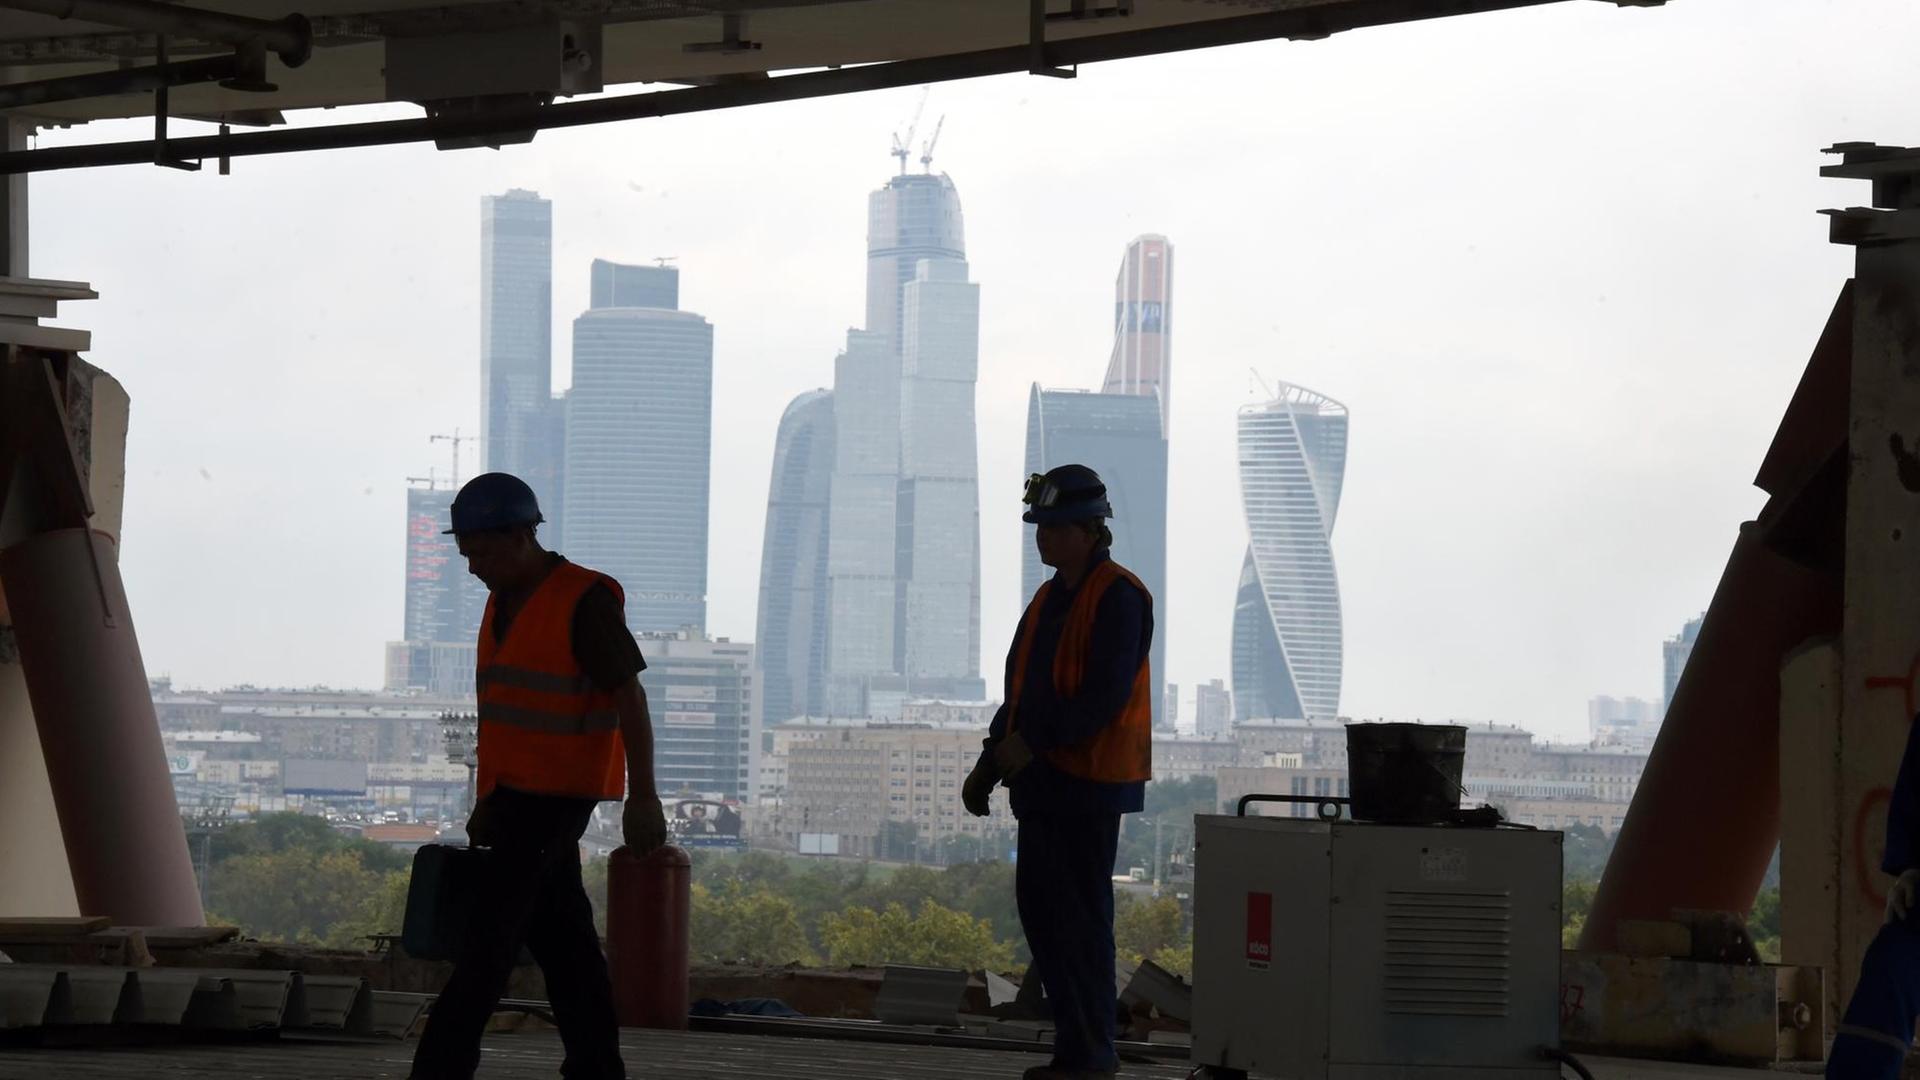 Arbeiter stehen auf der Baustelle im Luschniki-Stadion, aufgenommen am 09.07.2015 in Moskau, Russland. In der Arena sollen Spiele der FIFA-Fußball-Weltmeisterschaft 2018 stattfinden. t